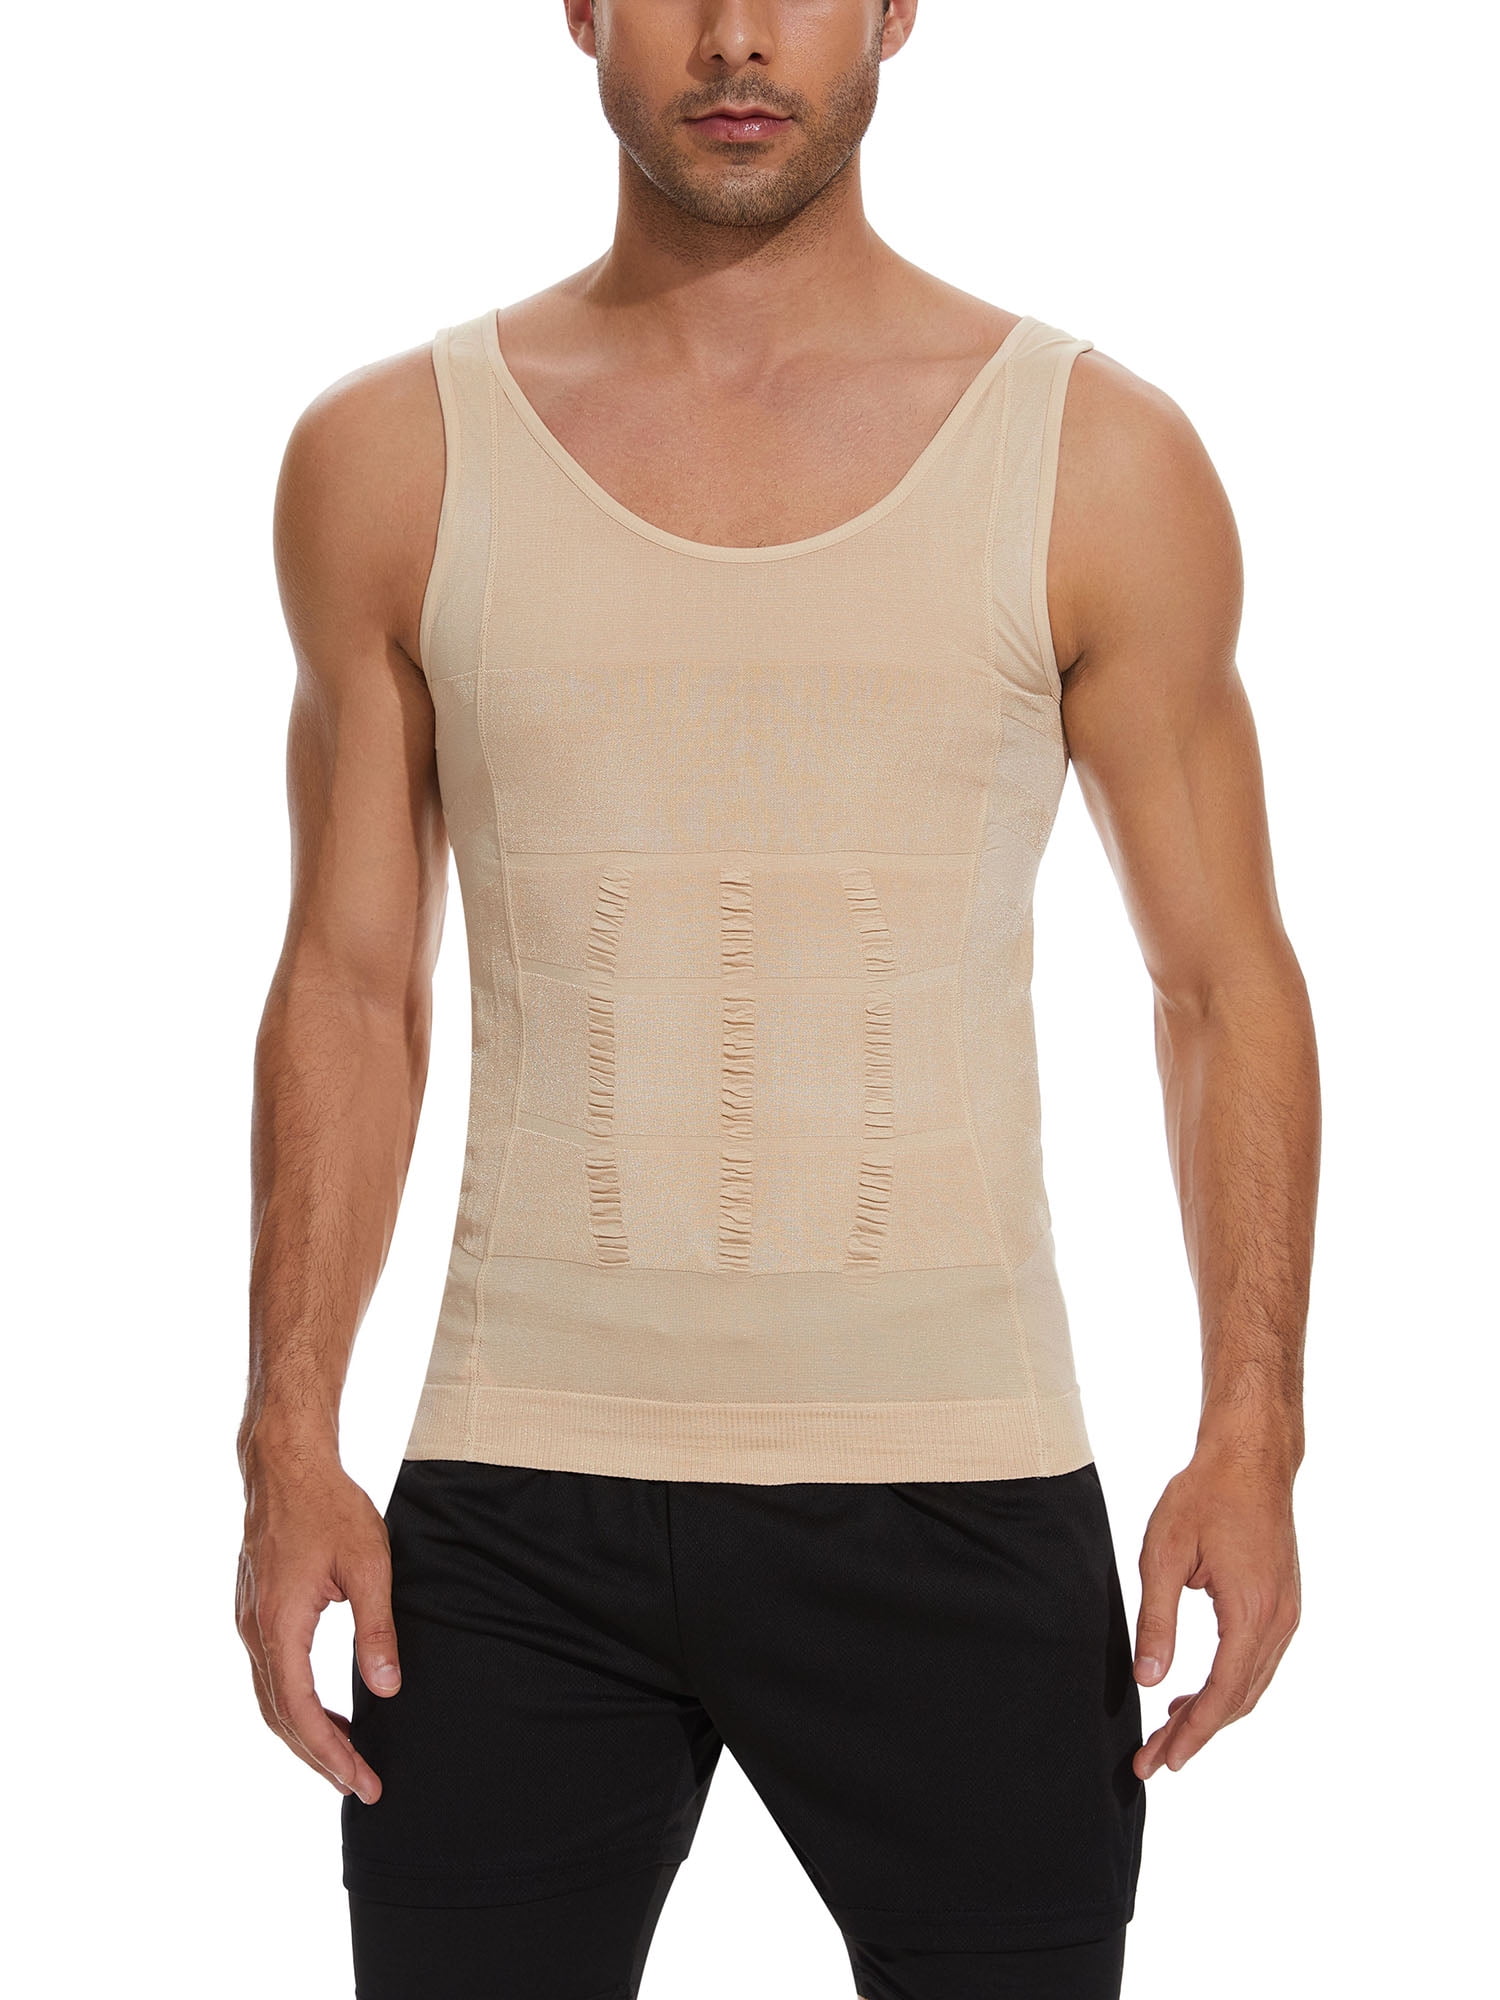 Mens Compression Shirt Slim Tank Top Gynecomastia Body Shaper Vest